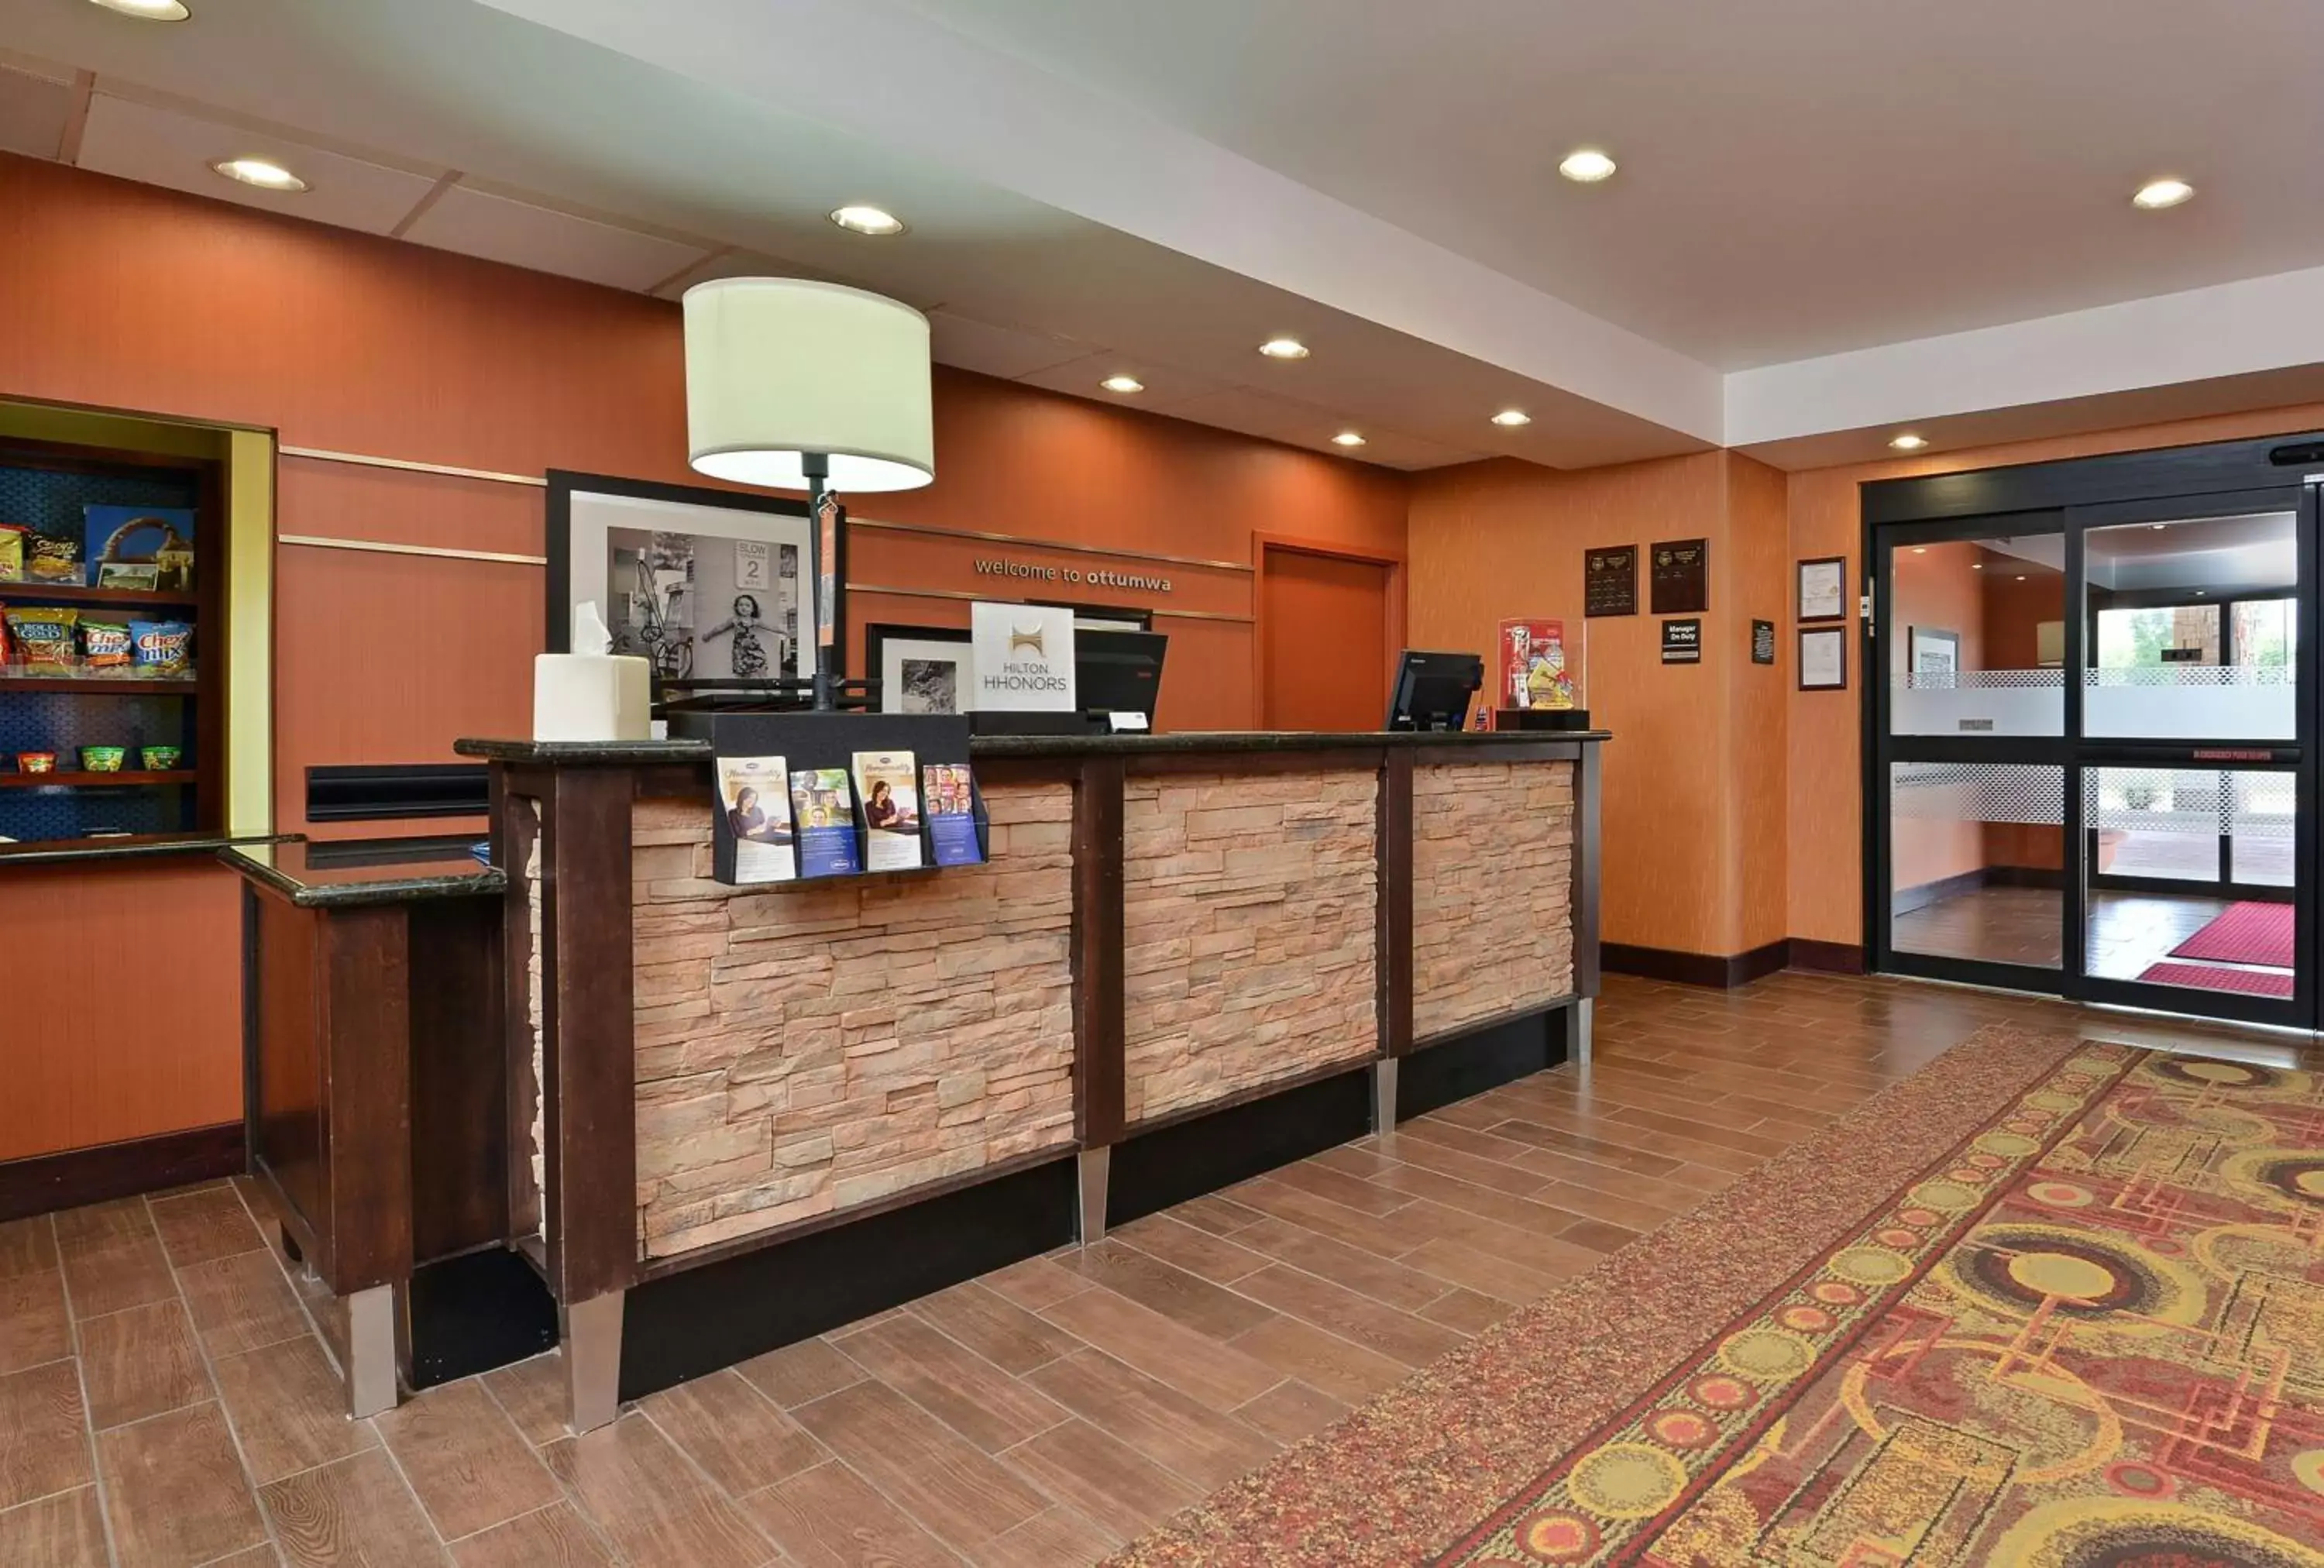 Lobby or reception, Lobby/Reception in Hampton Inn Ottumwa